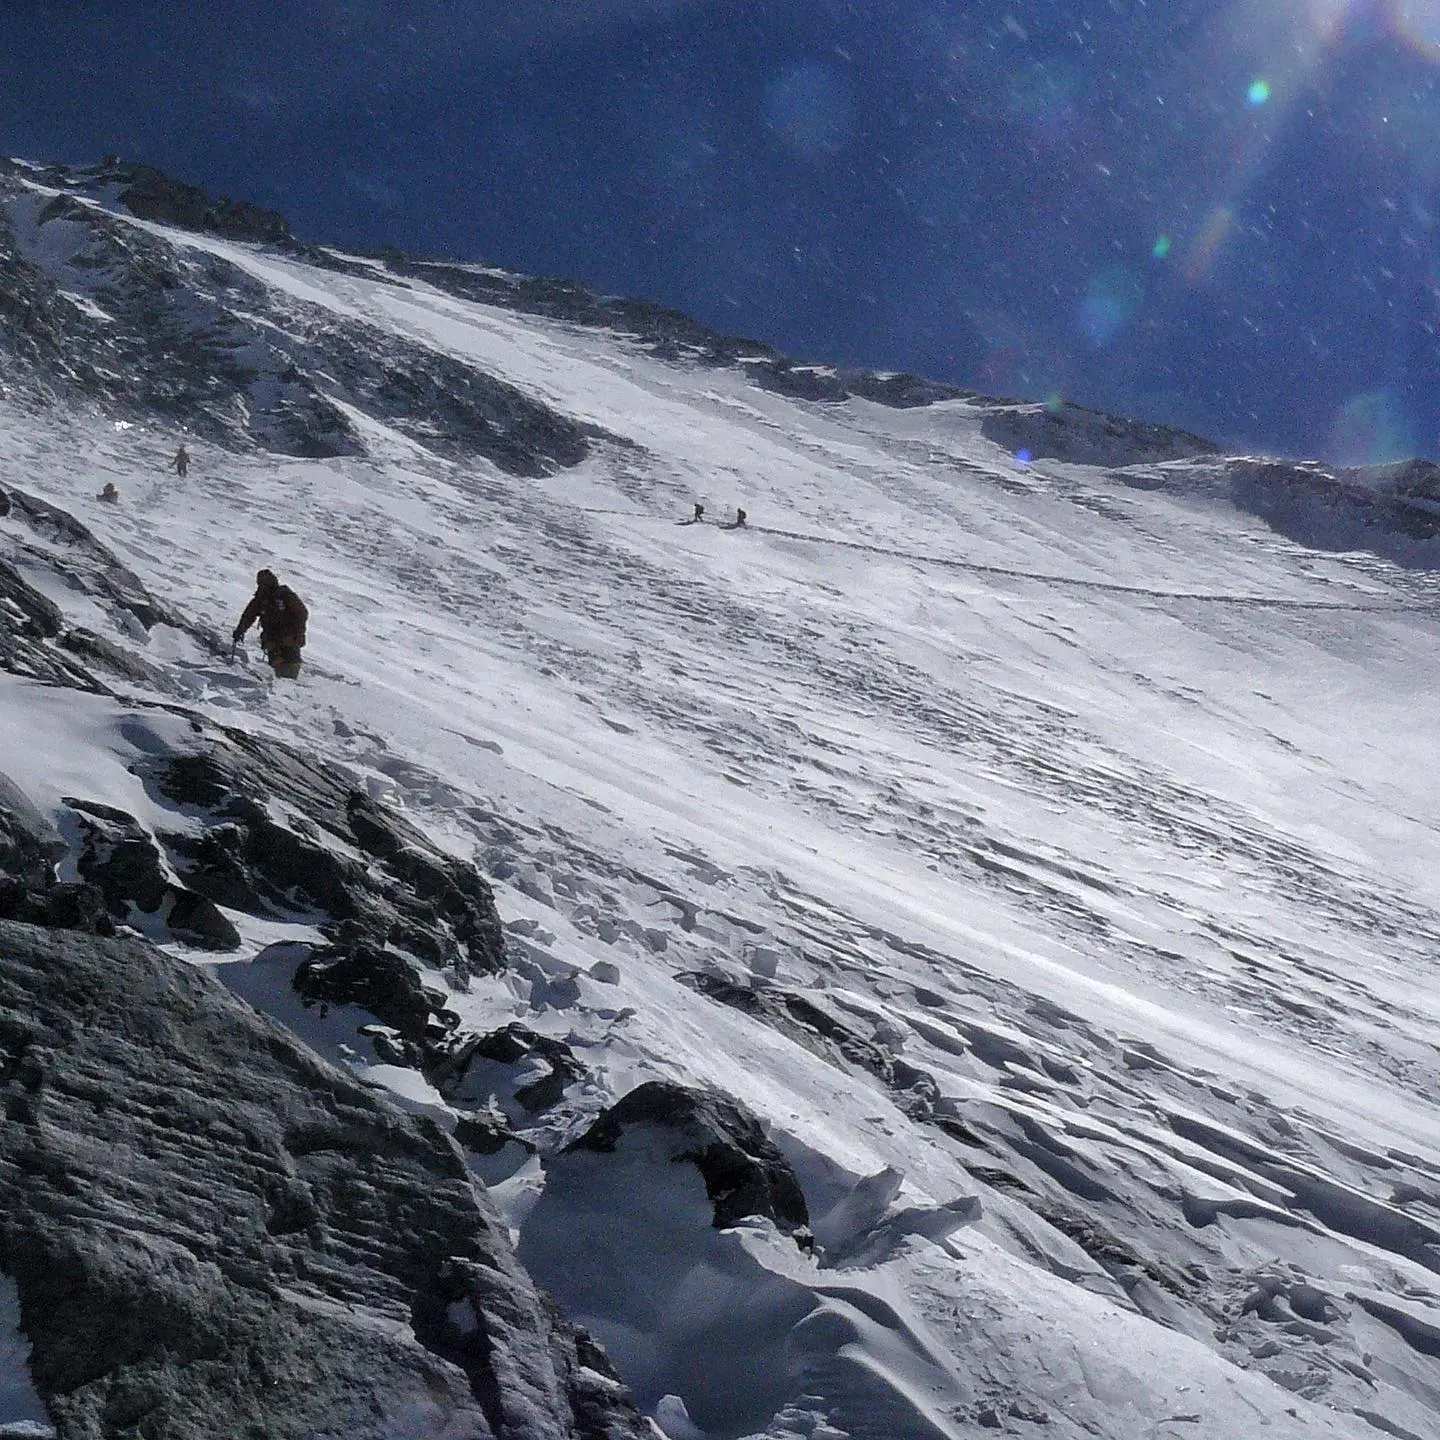 Дхаулагірі (Dhaulagiri, 8167 м) сходження 2008 року. Фото David Göttler